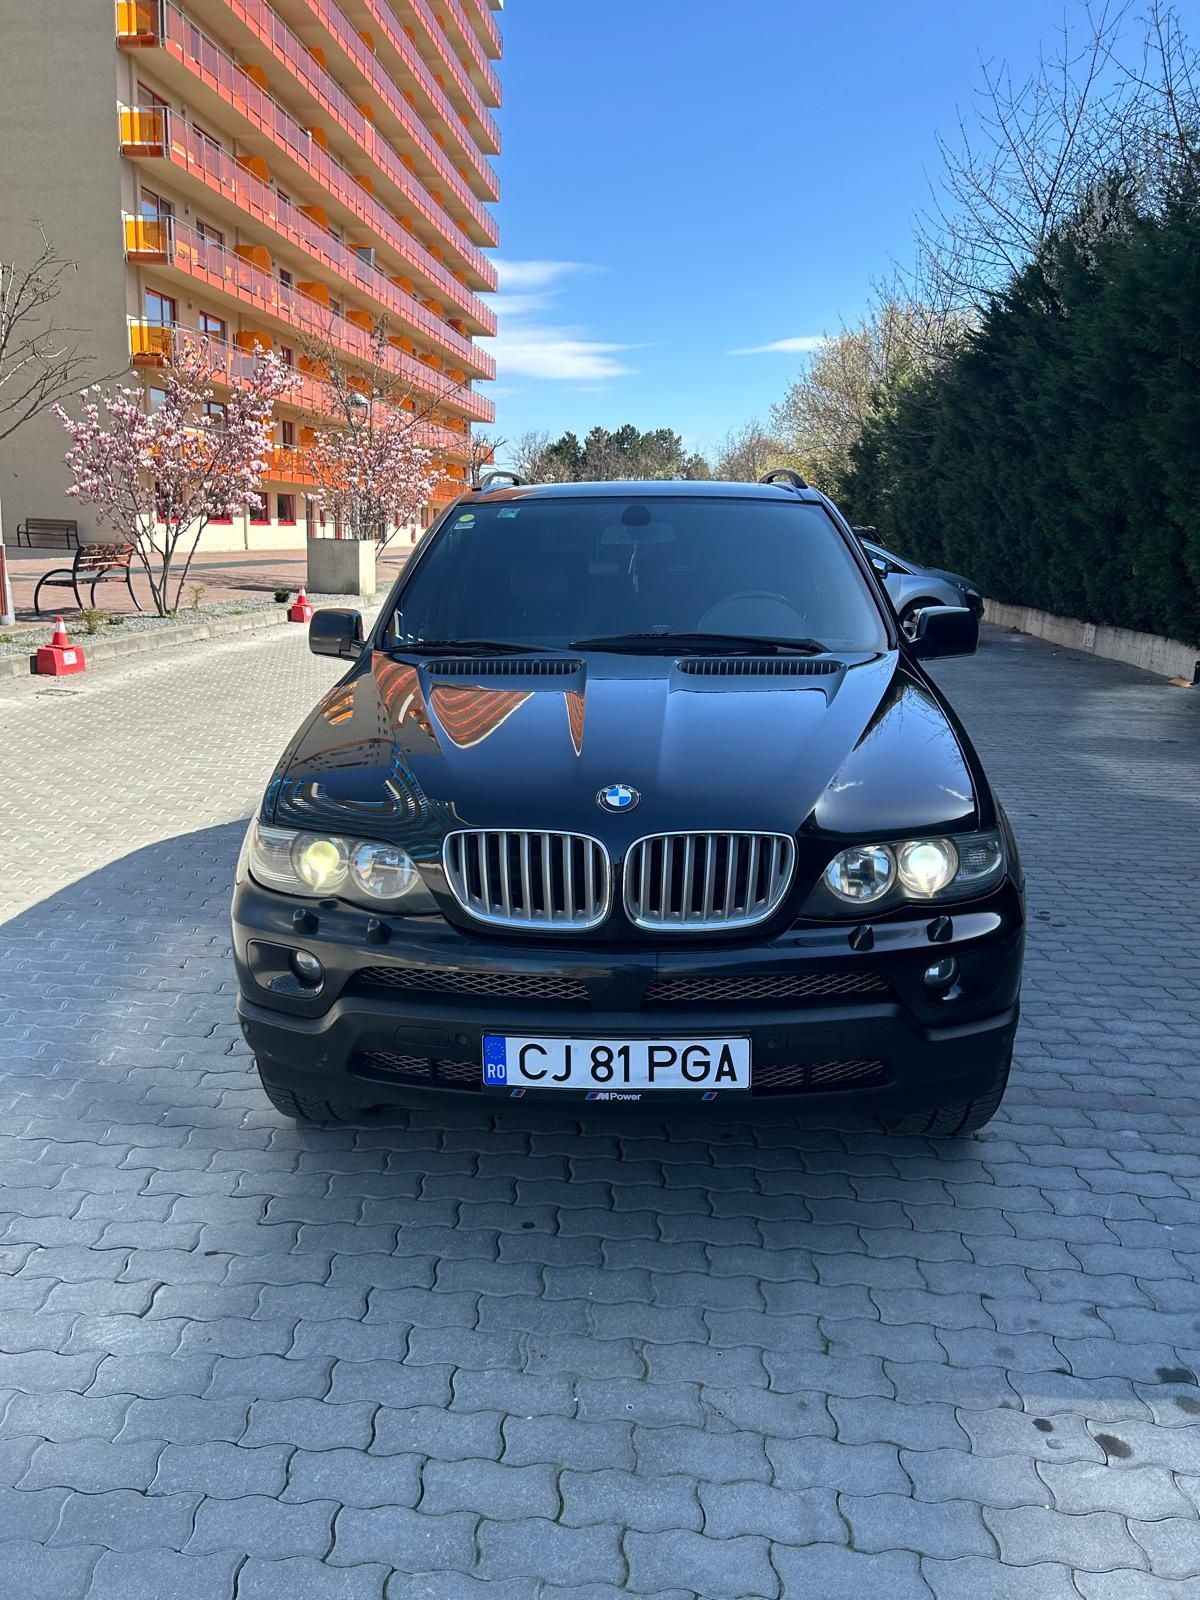 BMW X5 E53 panoramic